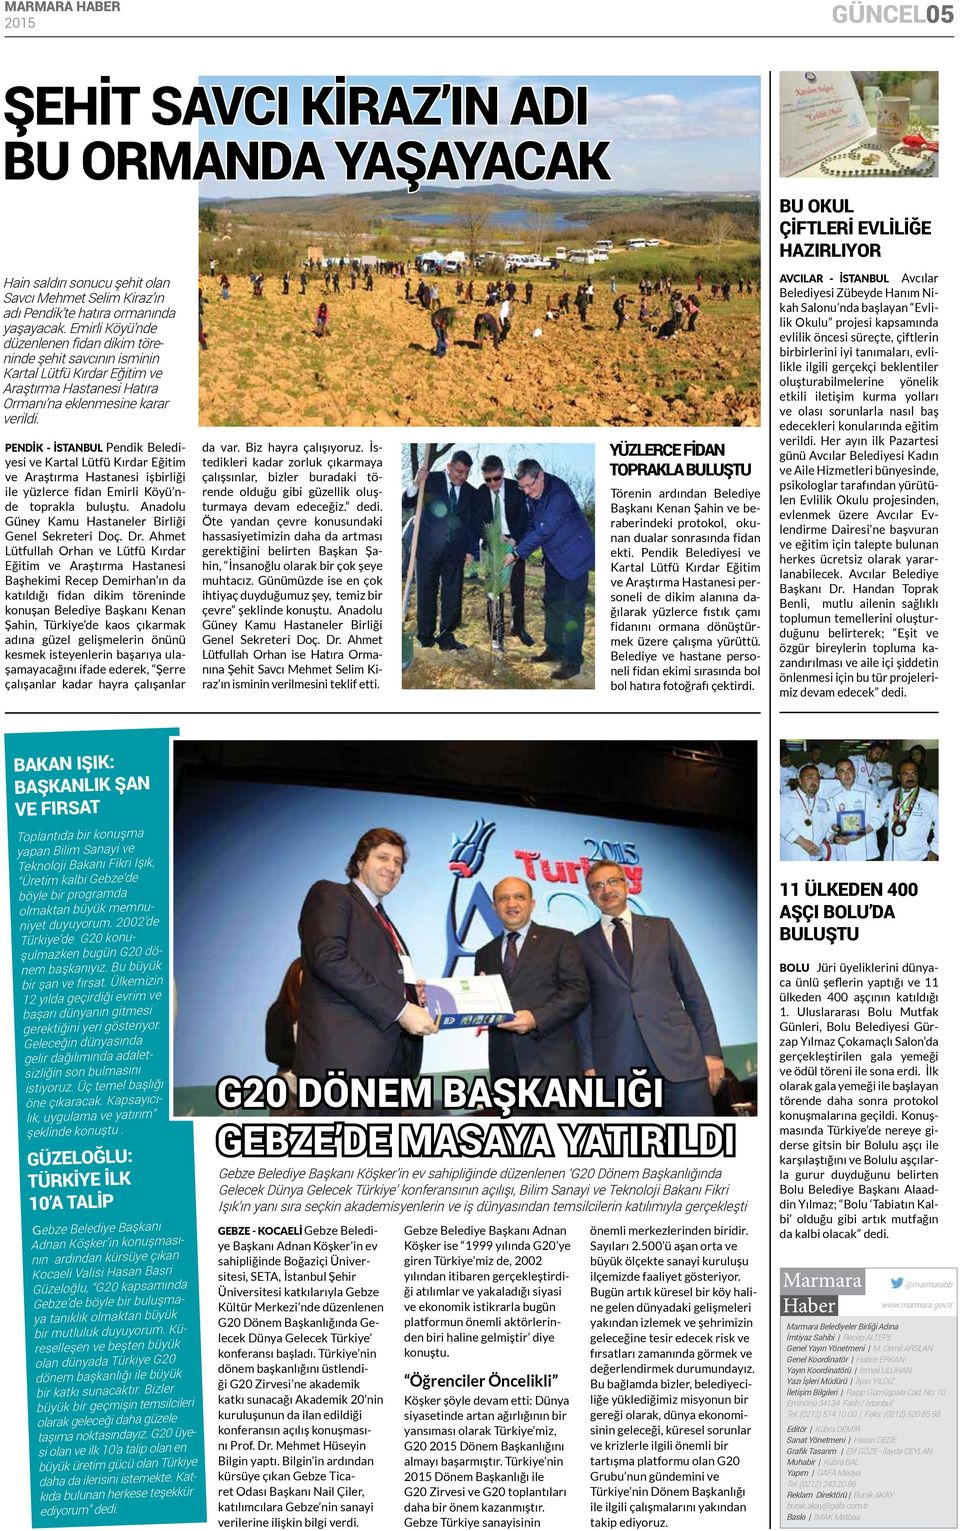 pendik - İSTANbUL Pendik Belediyesi ve Kartal Lütfü Kırdar Eğitim ve Araştırma Hastanesi işbirliği ile yüzlerce fidan Emirli Köyü nde toprakla buluştu.